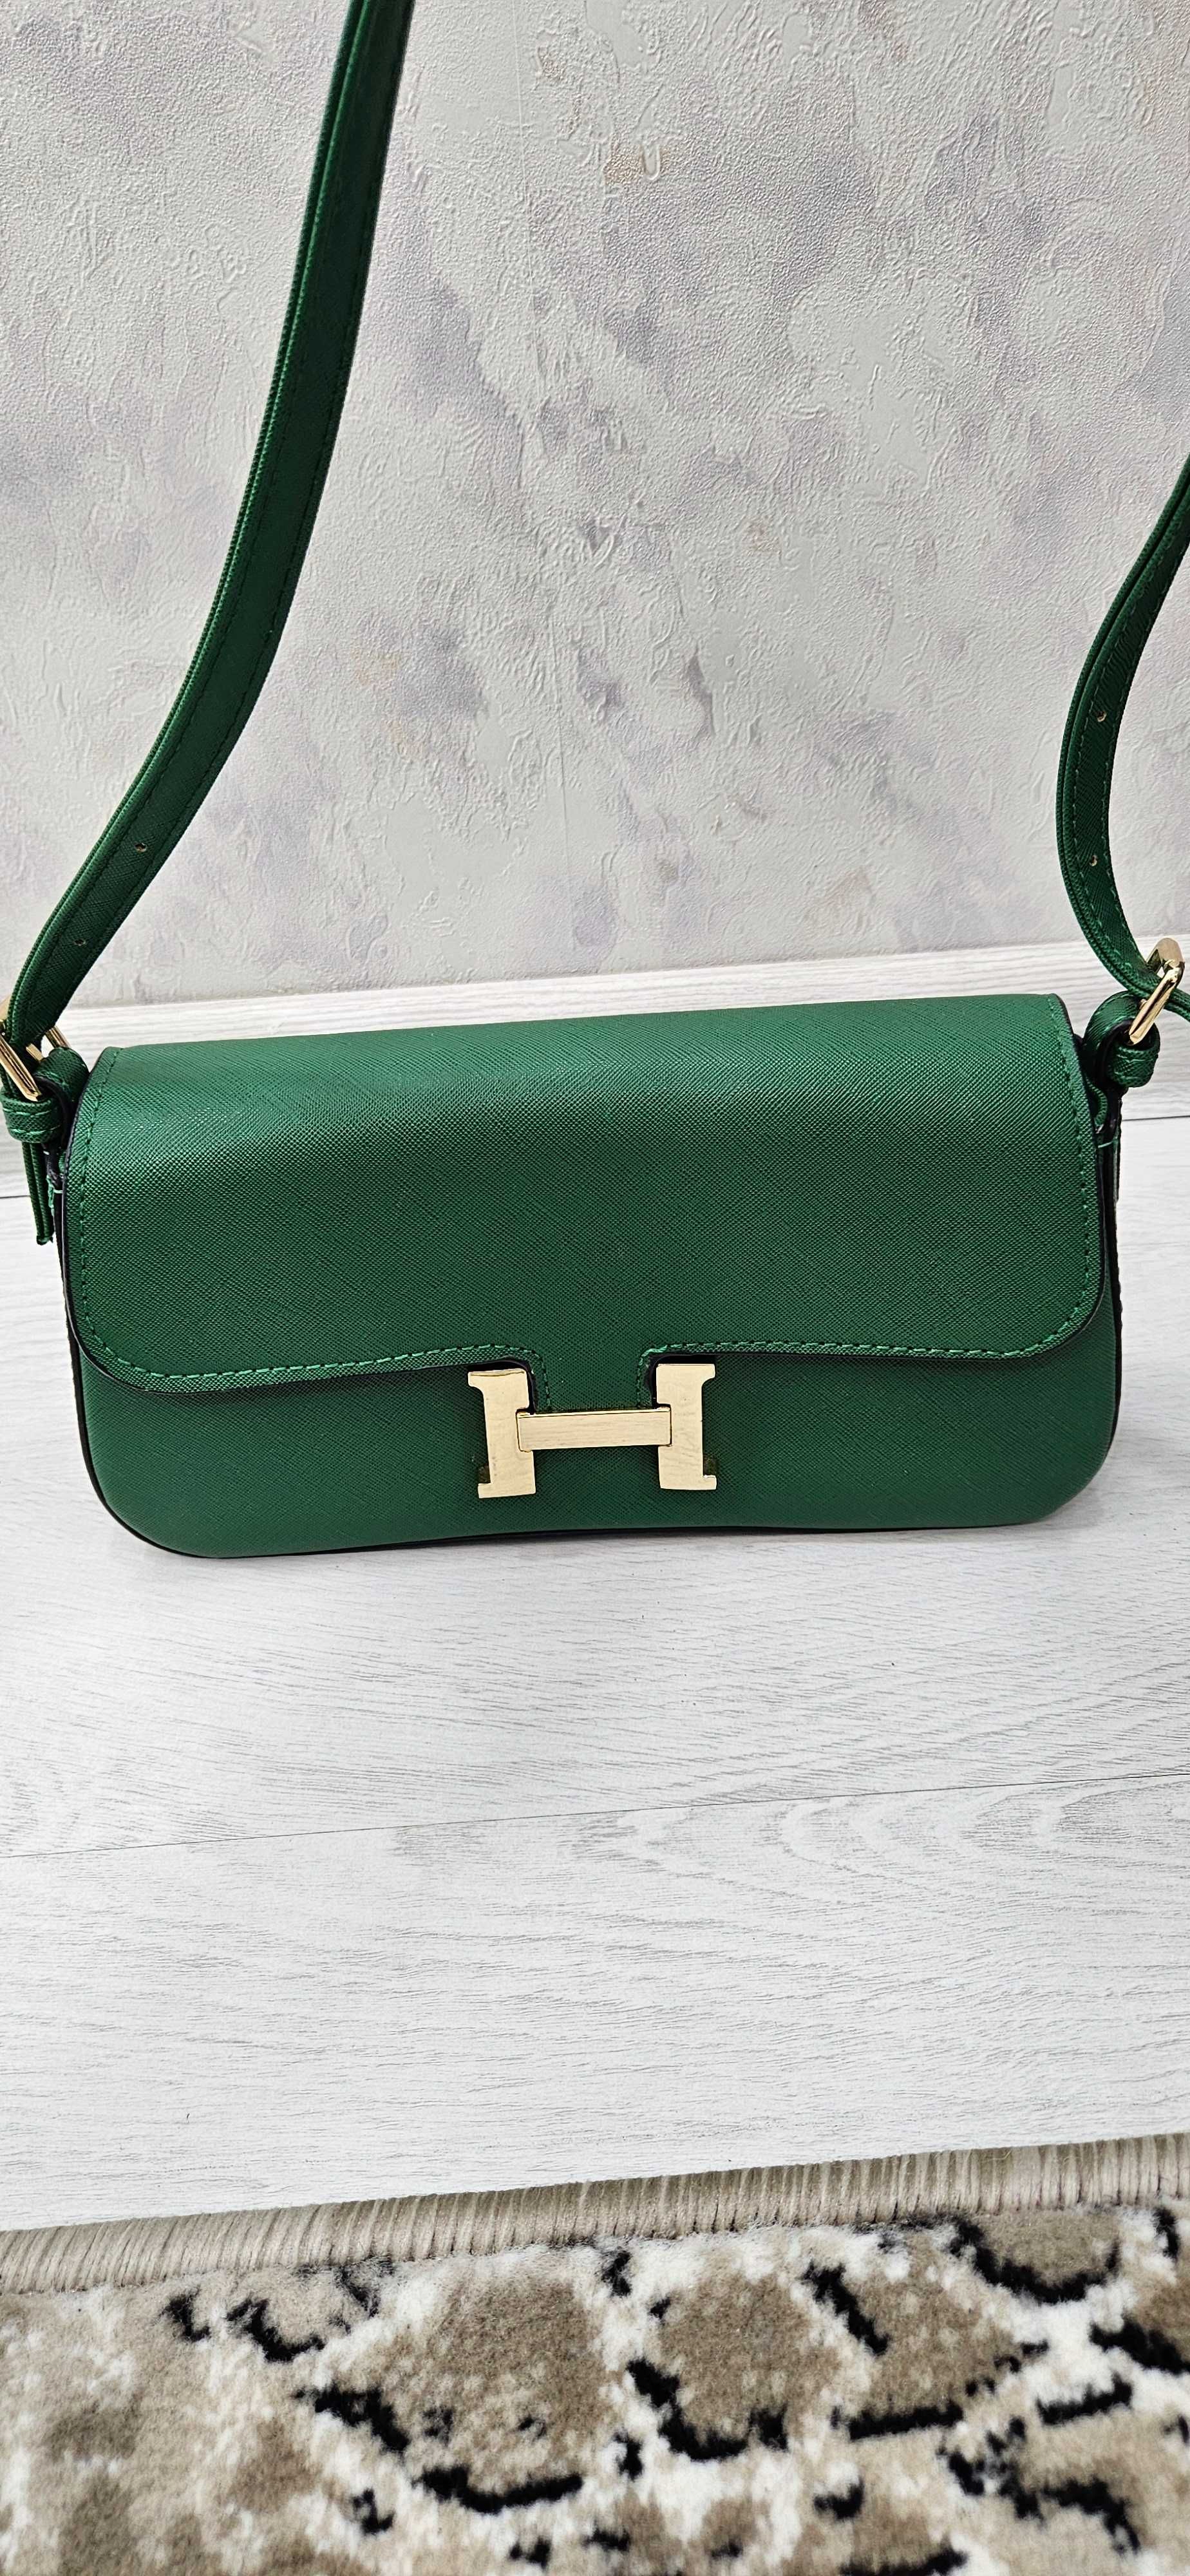 Hermes зеленая сумка